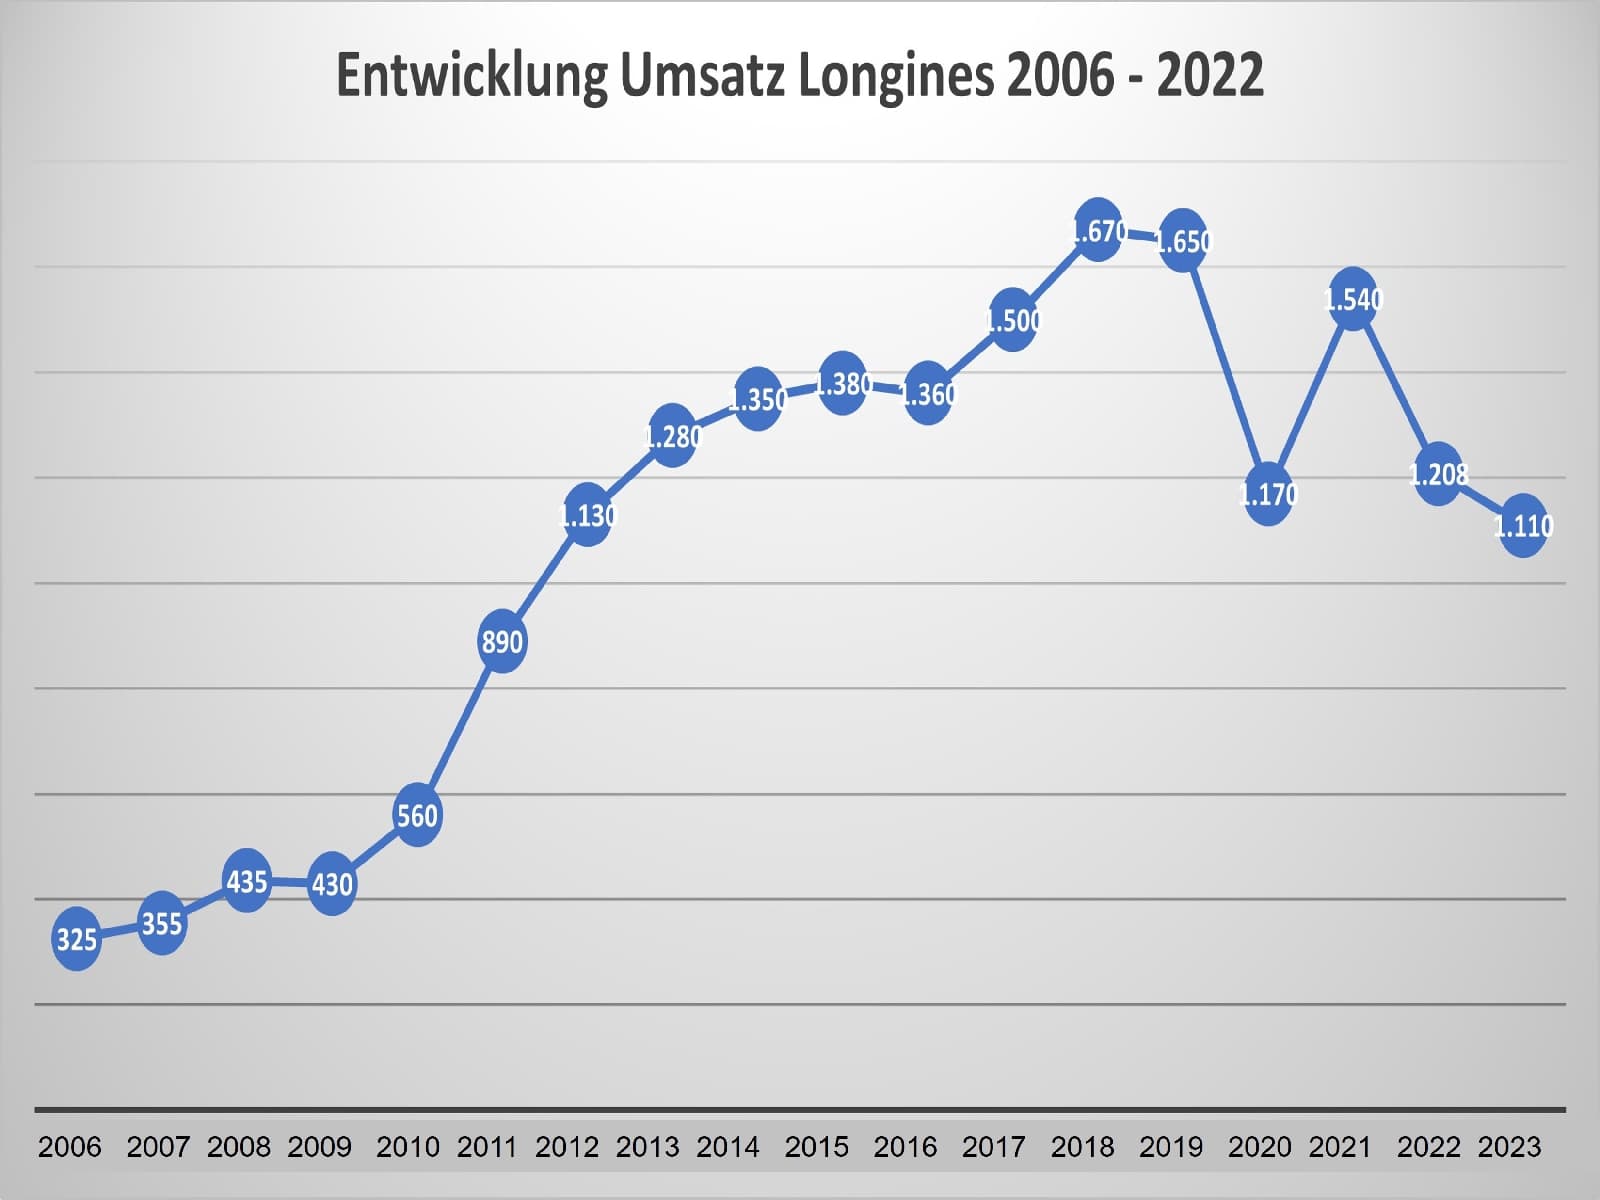 Umsatzentwicklung Longines 2006 - 2023 (geschätzt)